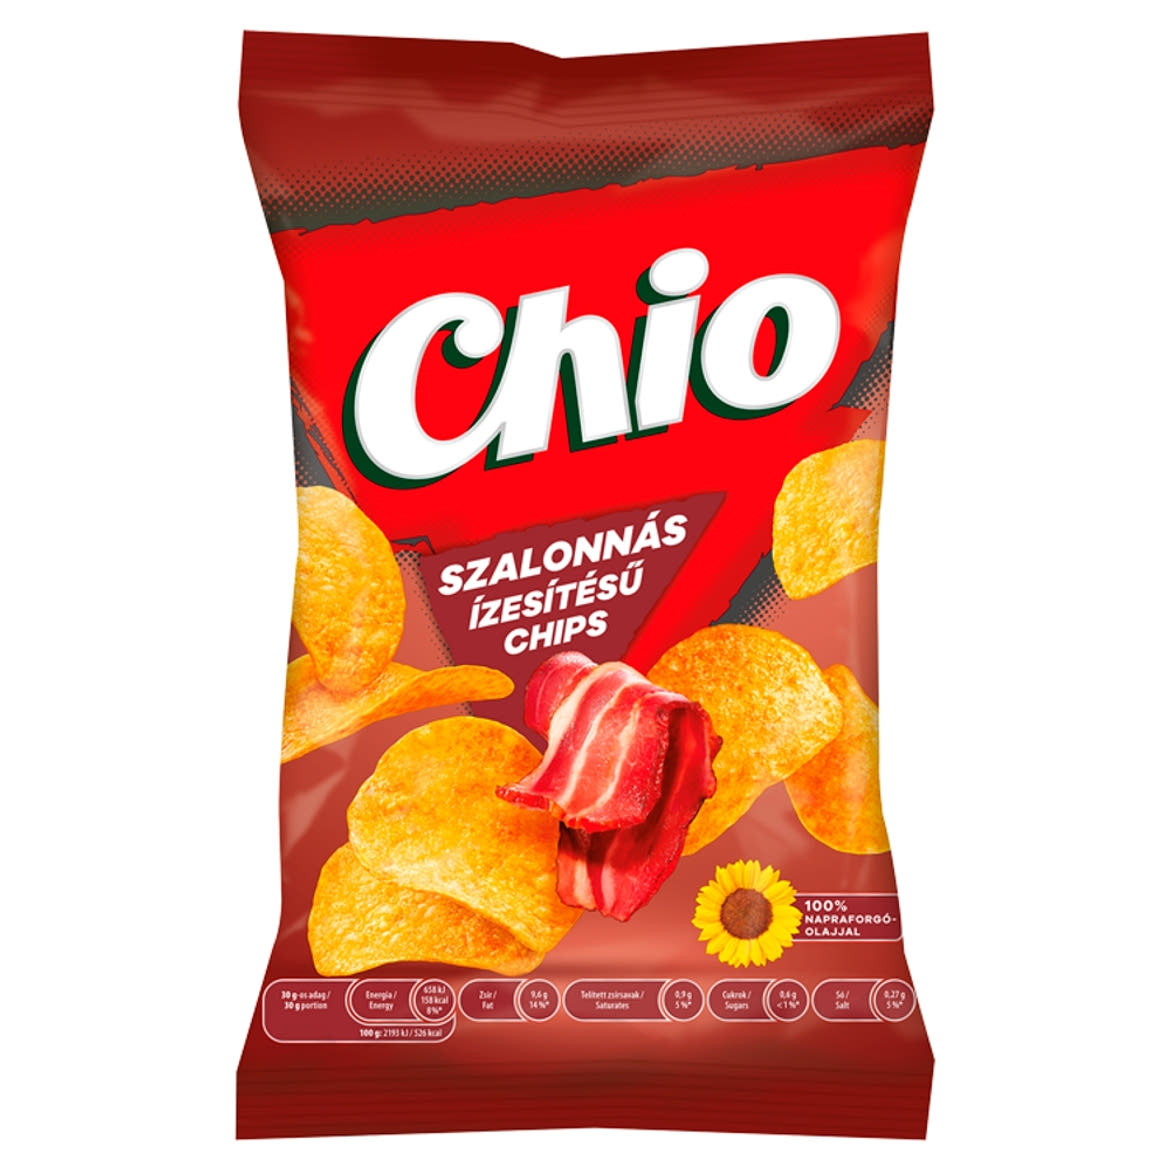 Chio szalonnás ízesítésű chips